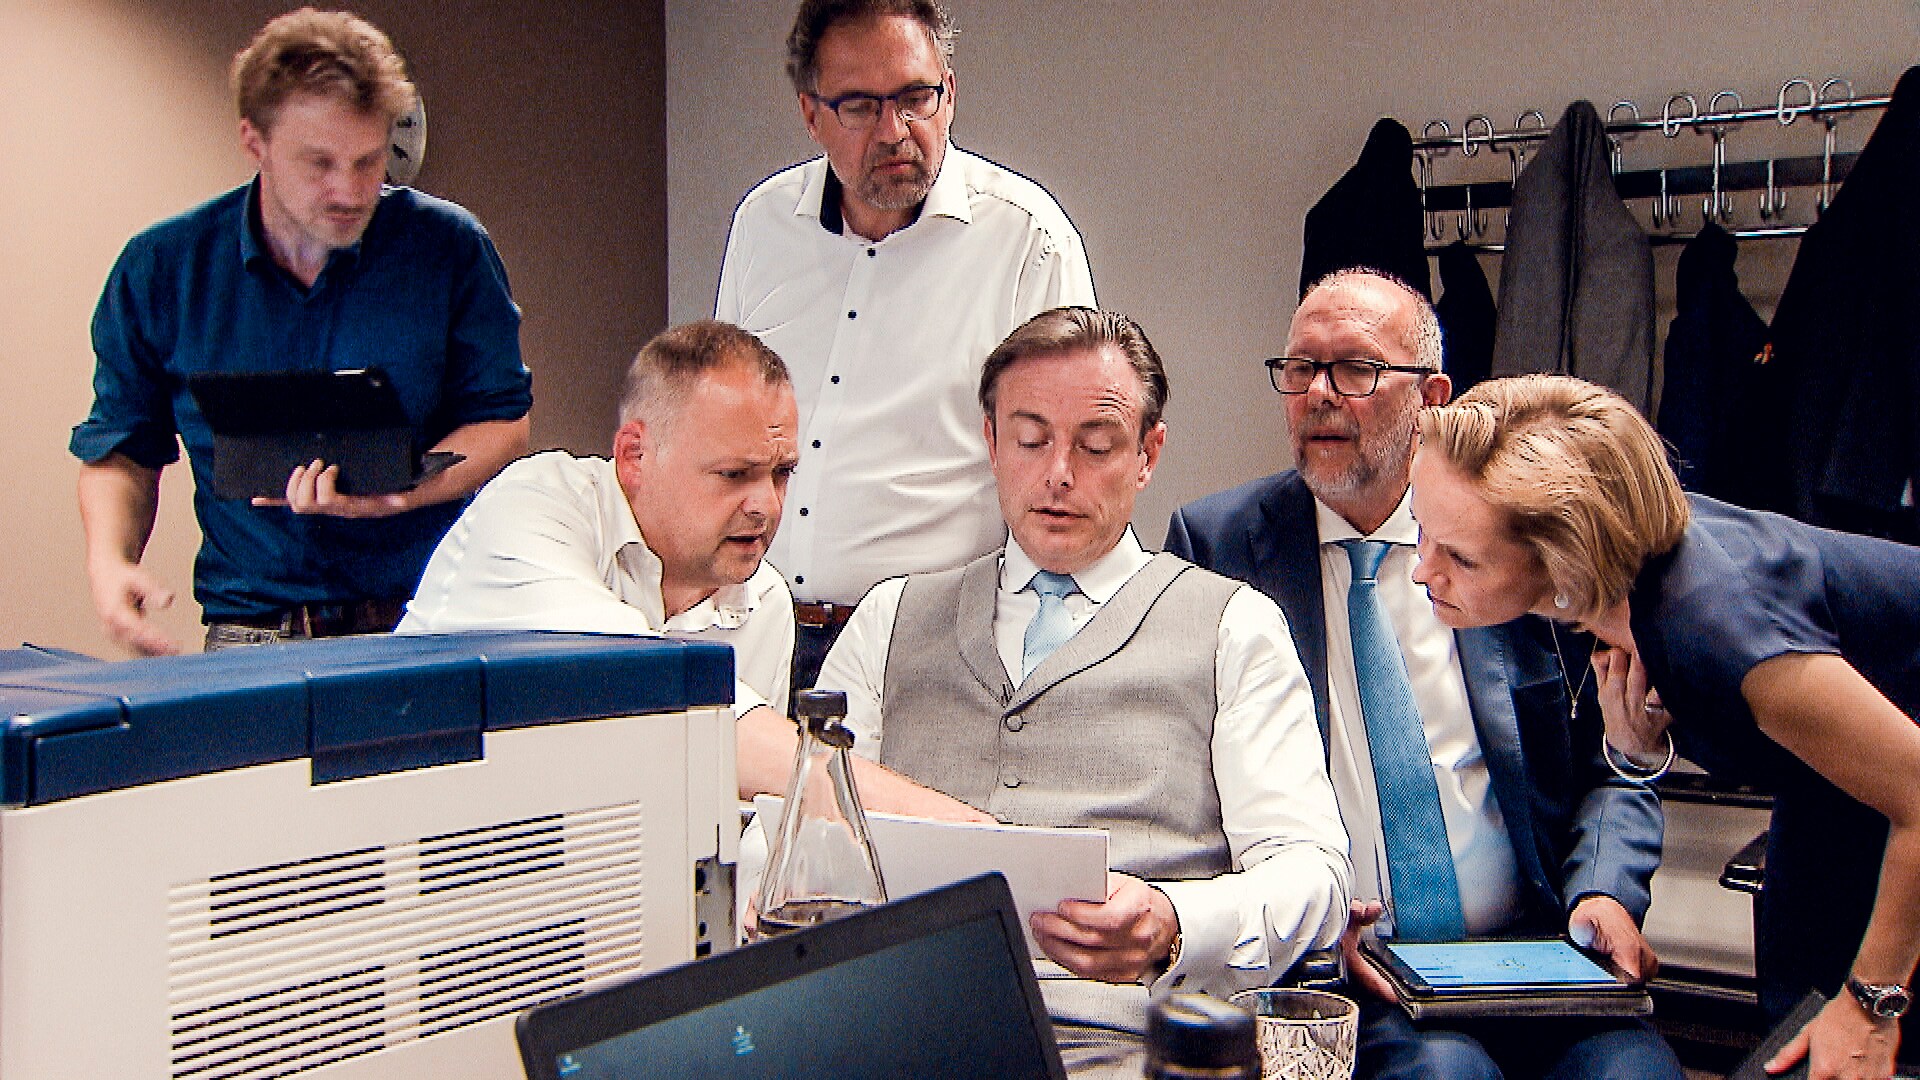 De Wever in warroom op verkiezingsdag: “Ik word zo moe van oorlog met links”